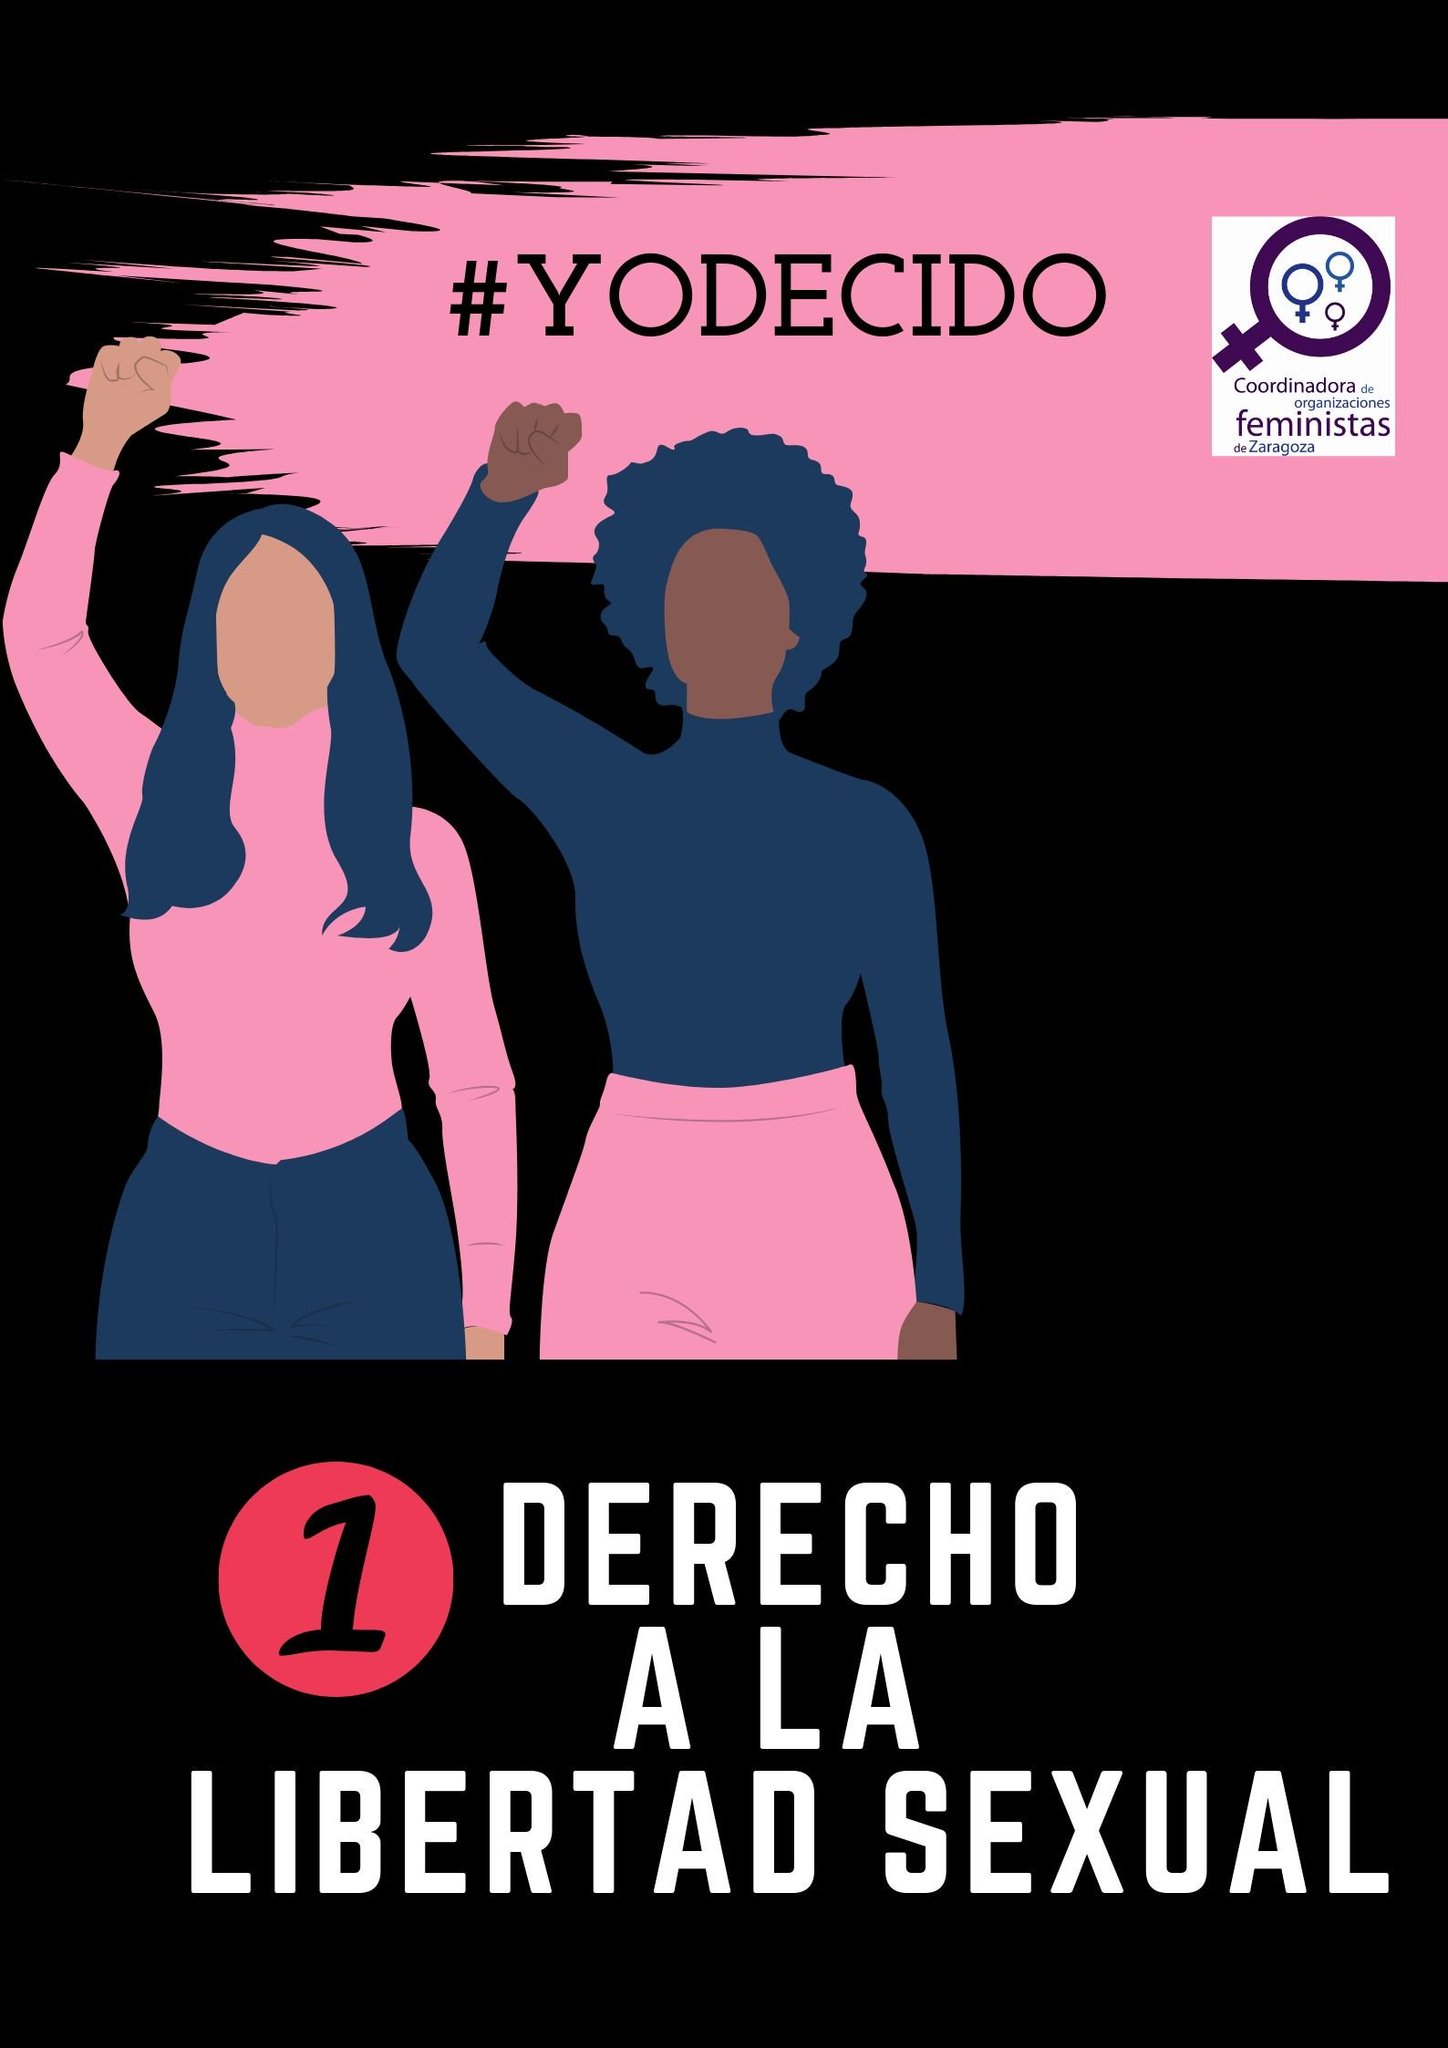 C Org Feministas Zgz On Twitter 1 Derecho A La Libertad Sexual Derecho De Cada Pax Para